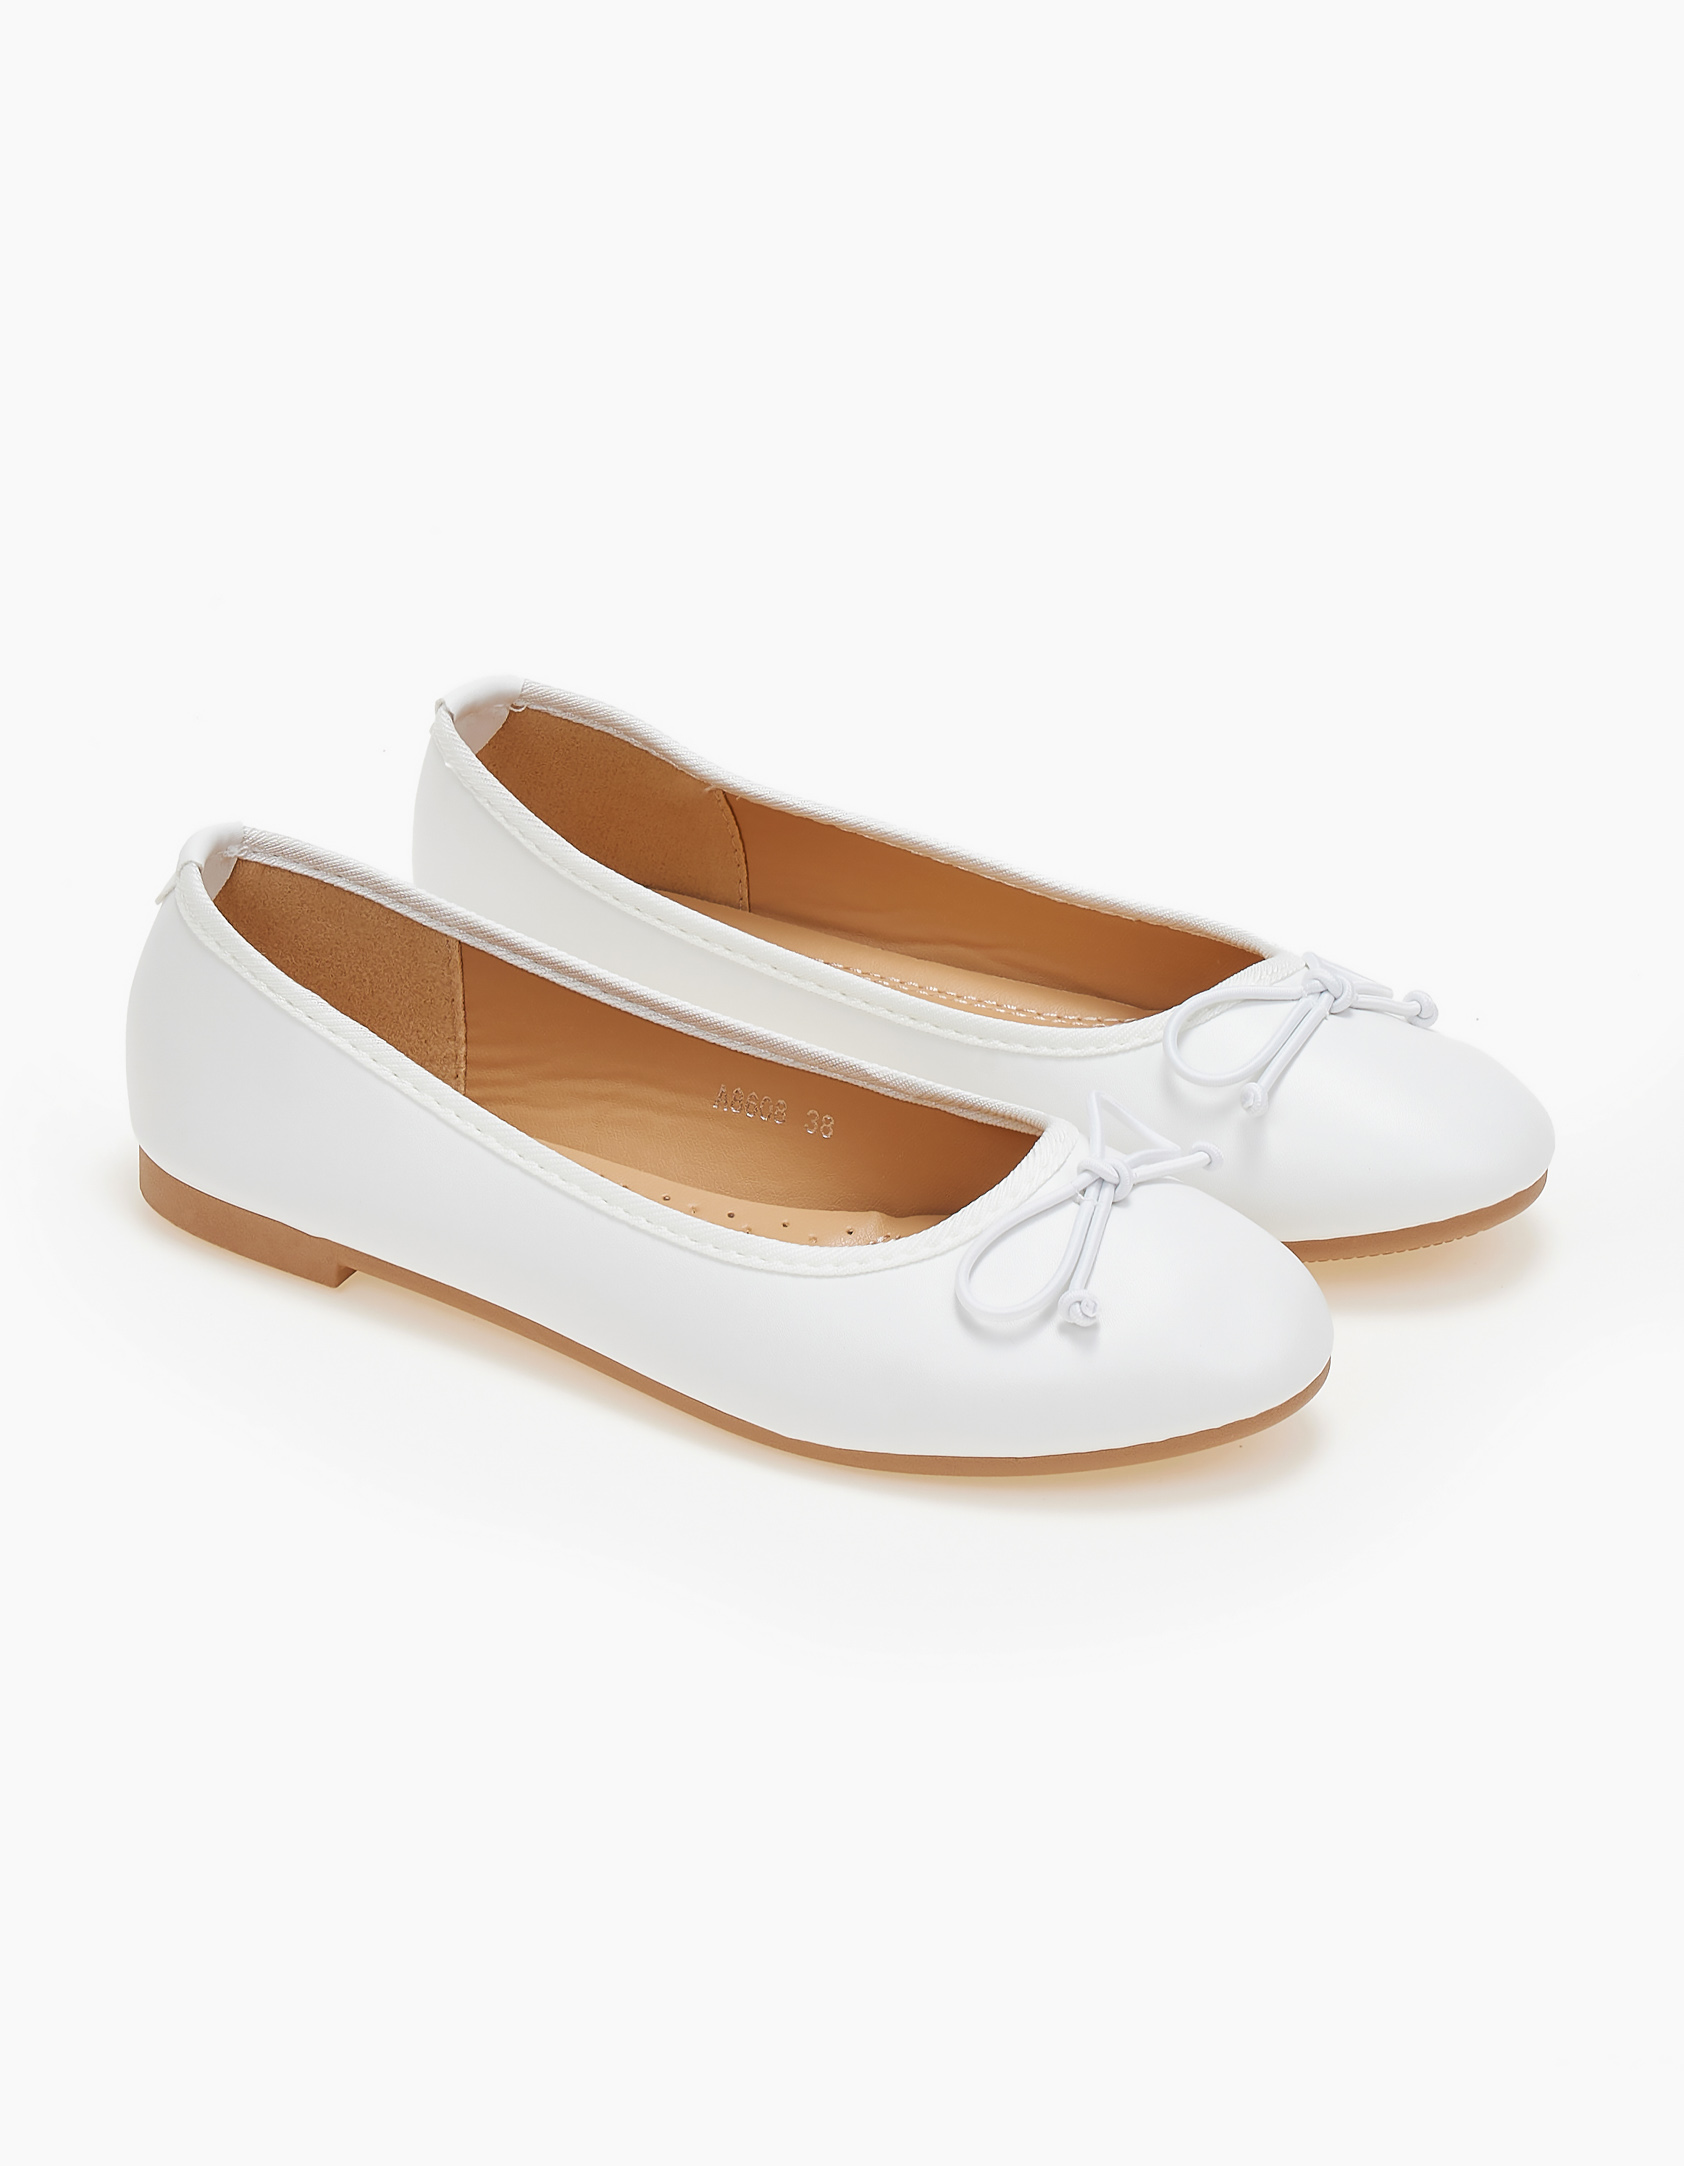 Γυναικείες μπαλαρίνες με διακοσμητικό φιόγκο - Λευκό Παπούτσια > Μπαλαρίνες